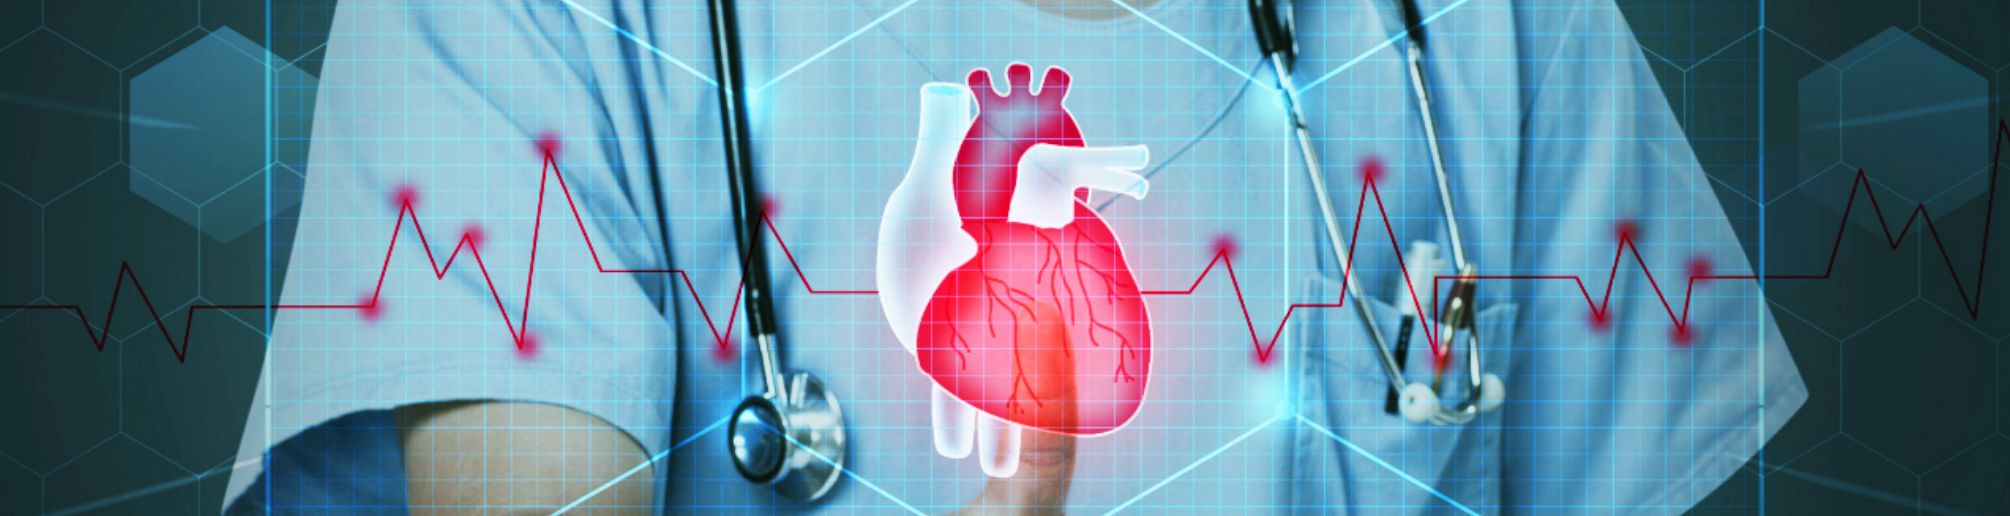 청진기를 멘 의료진의 상체에 심장과 심장박동 CG이미지가 합성되어있다